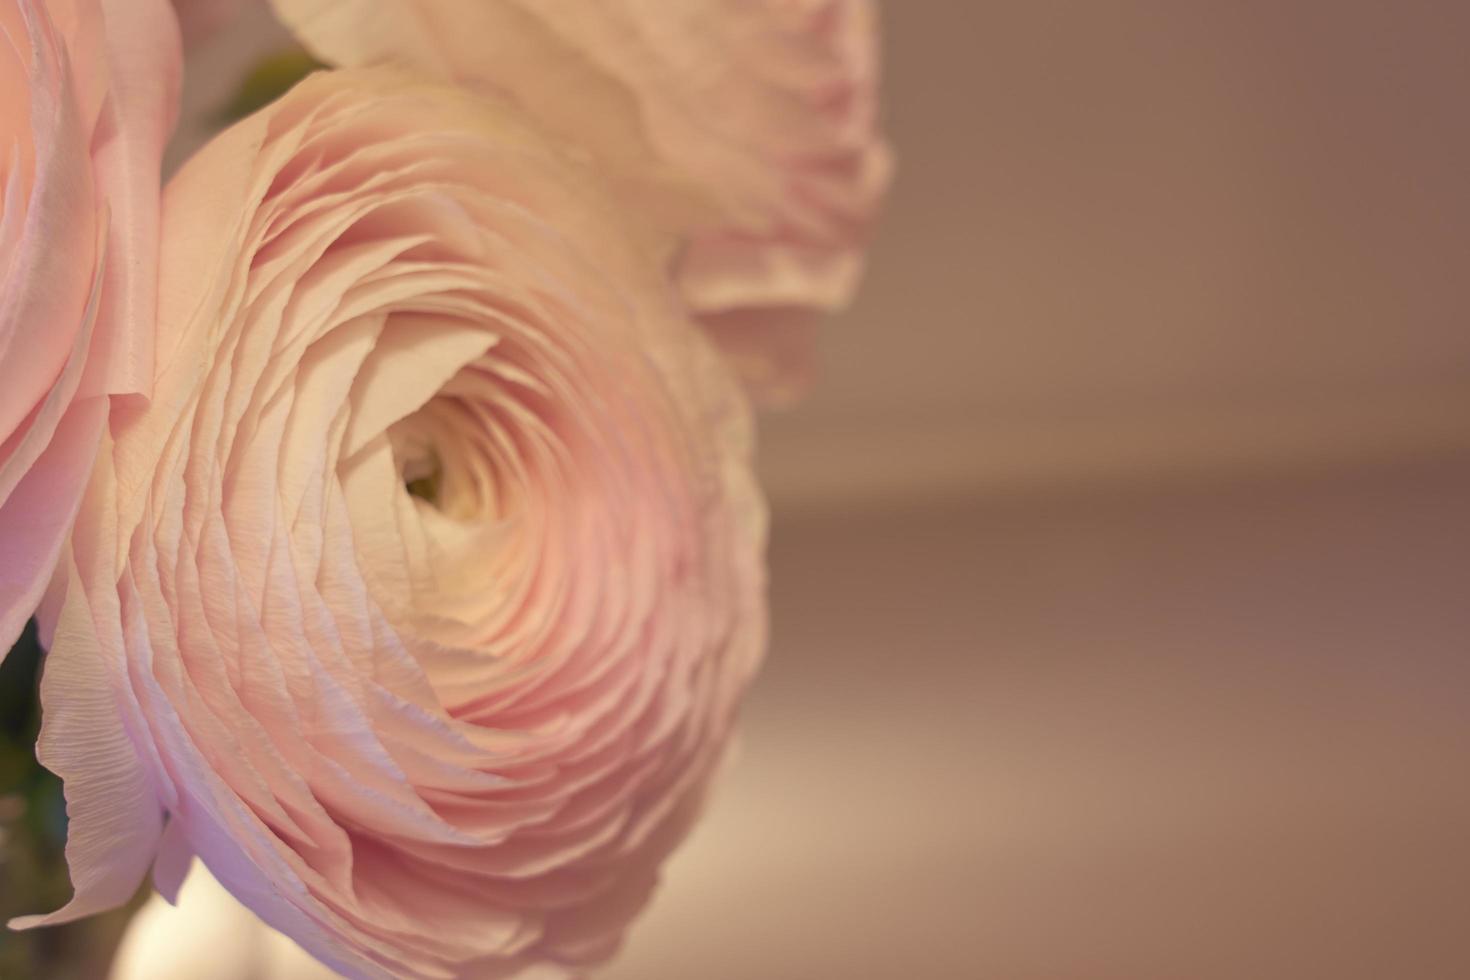 fiori di ranuncolo rosa si chiudono con uno sfondo sfocato foto